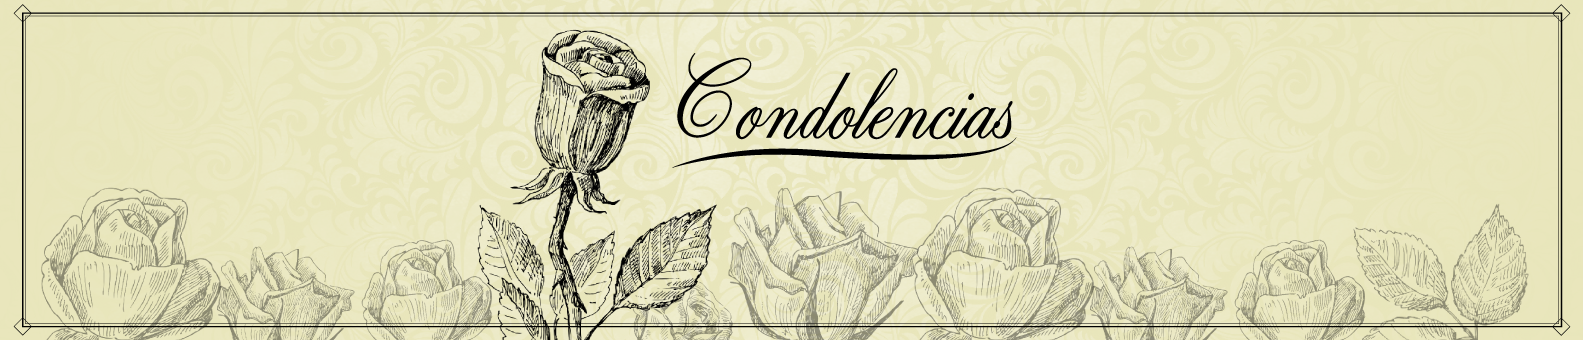 banner_condolencias2